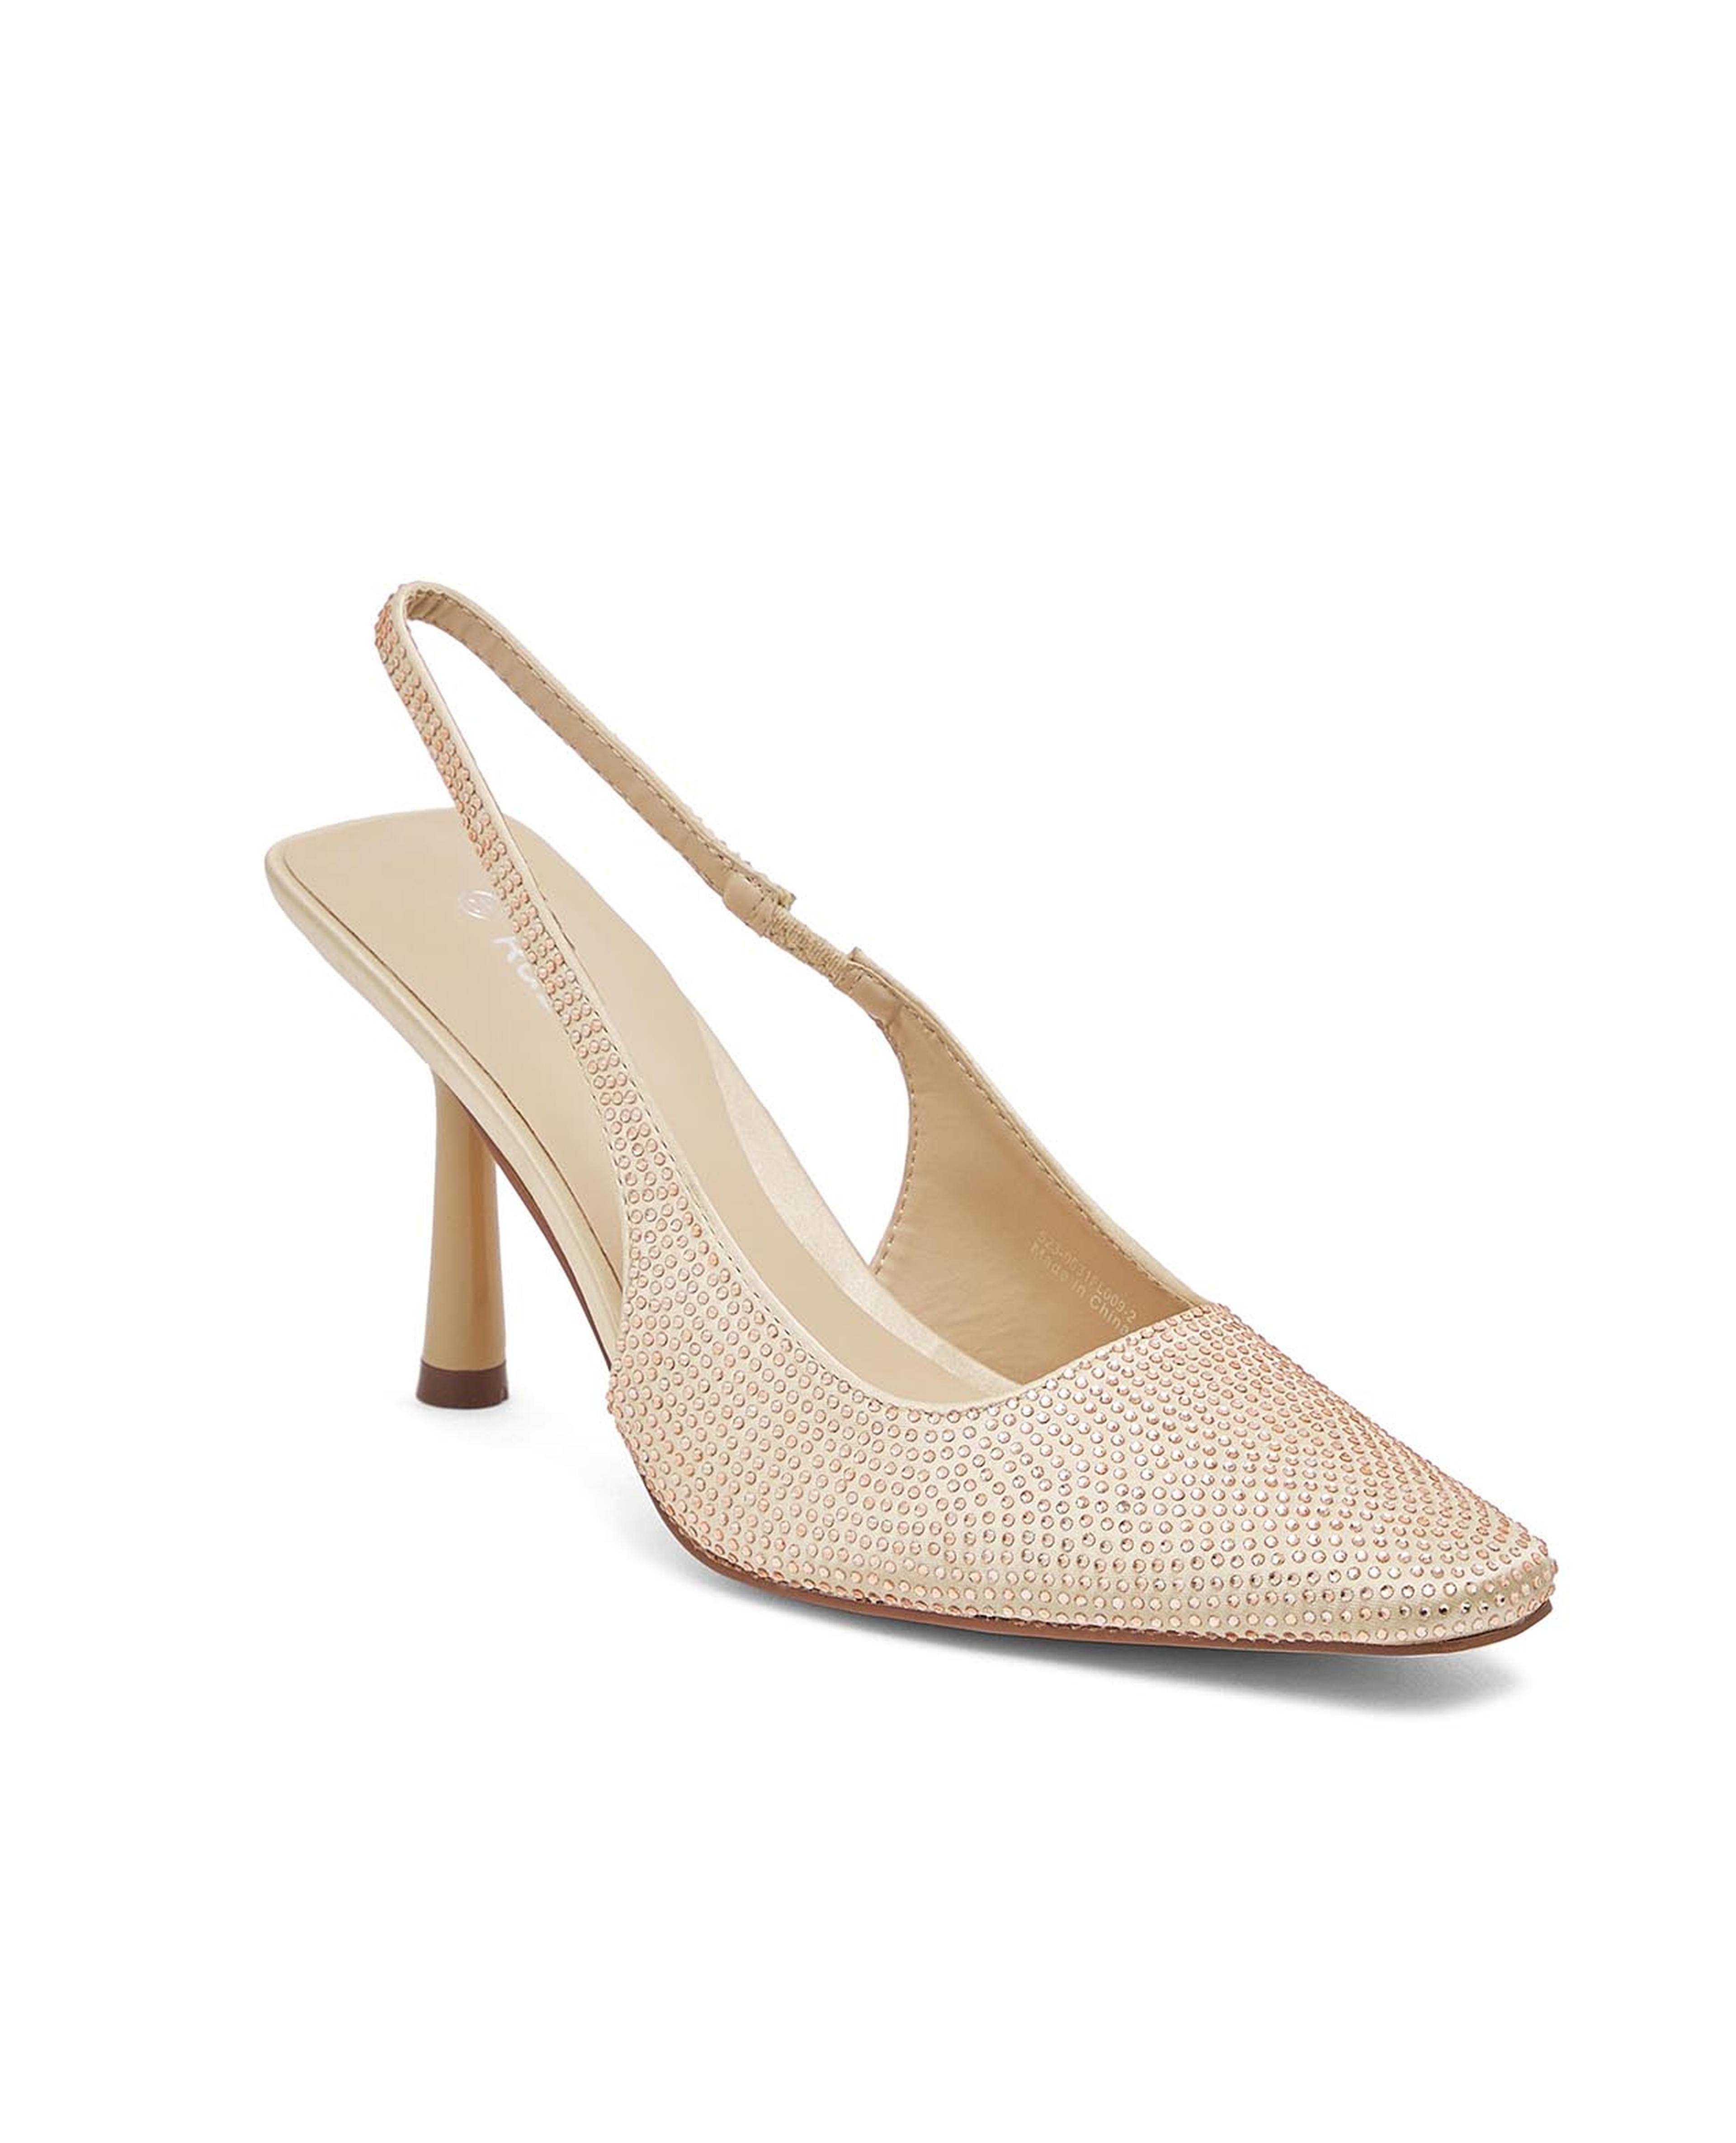 Marco Tozzi Classic heels - cream/off-white - Zalando.de